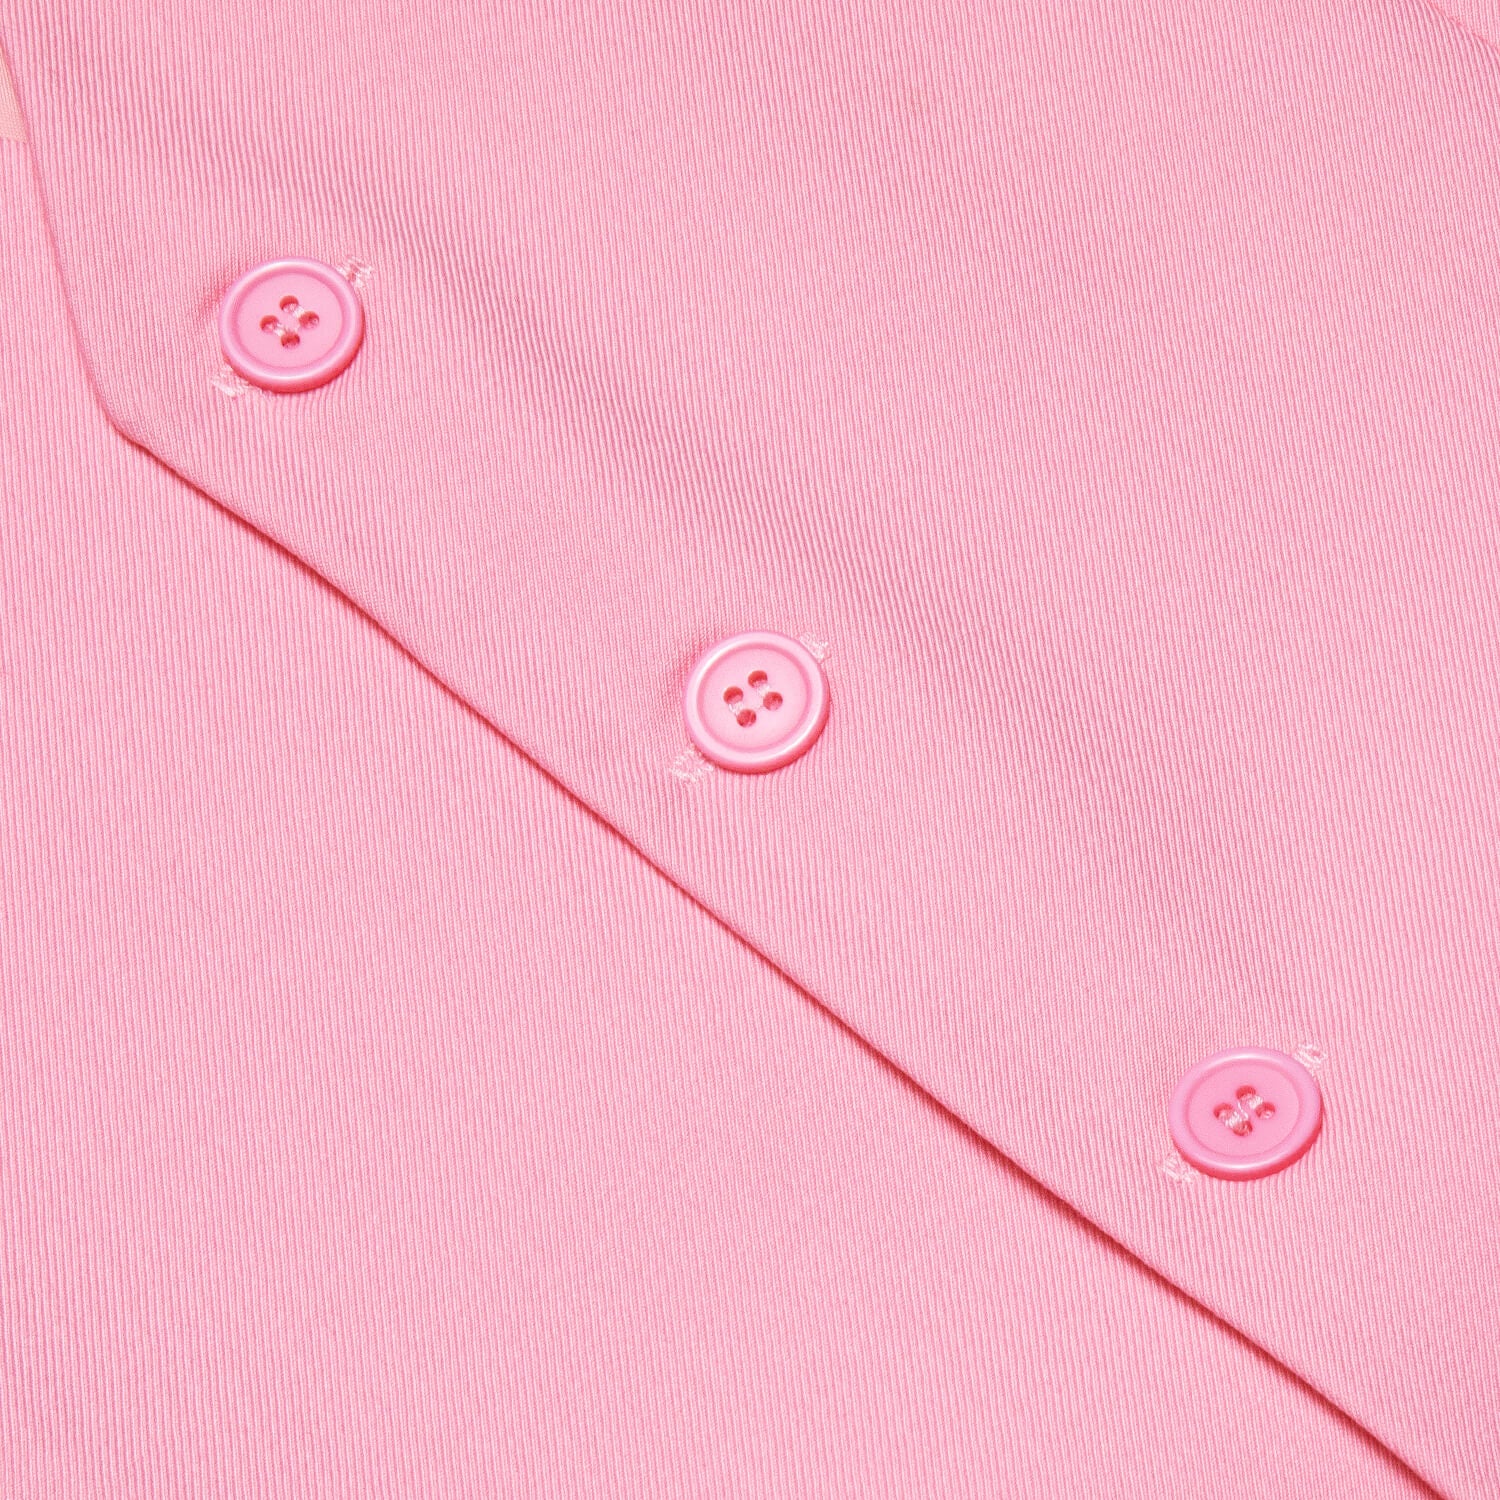 Hi-Tie Vest for Men Light Pink Solid Silk Vest Business Dress Suit Hot